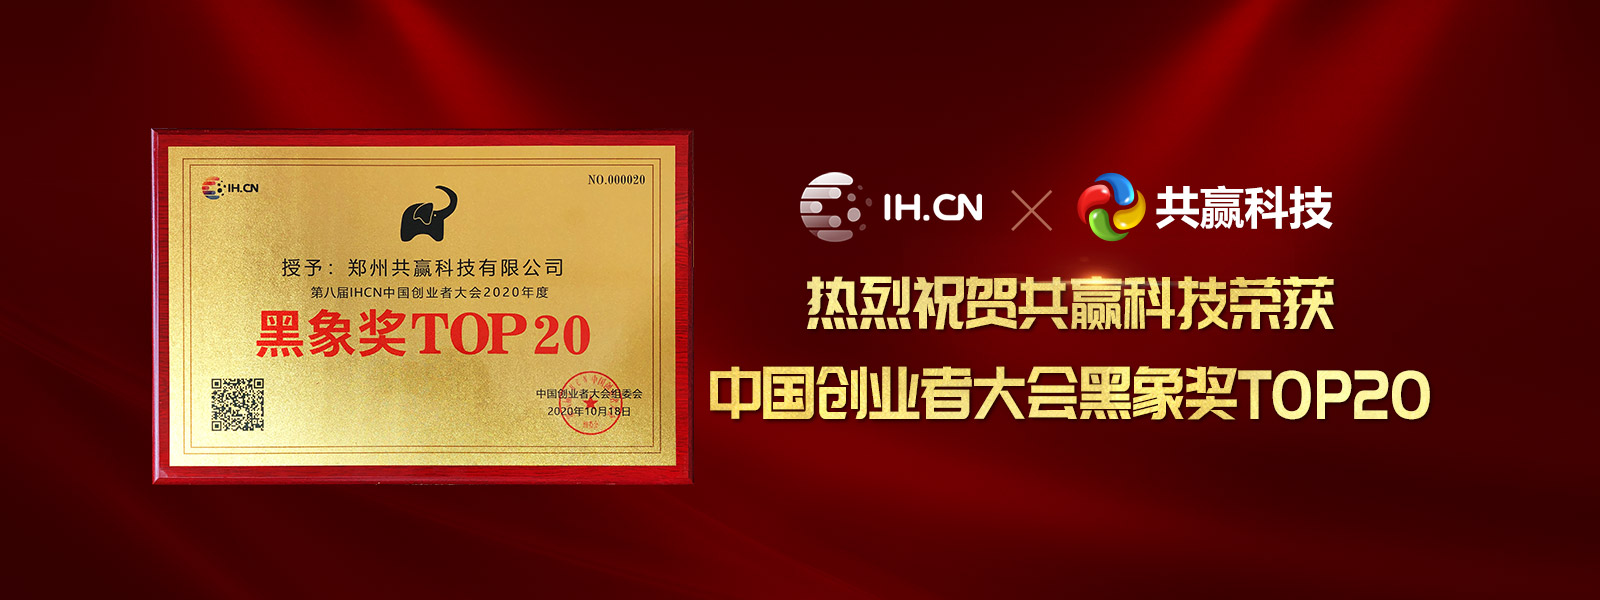 中国创业者大会黑象奖TOP20